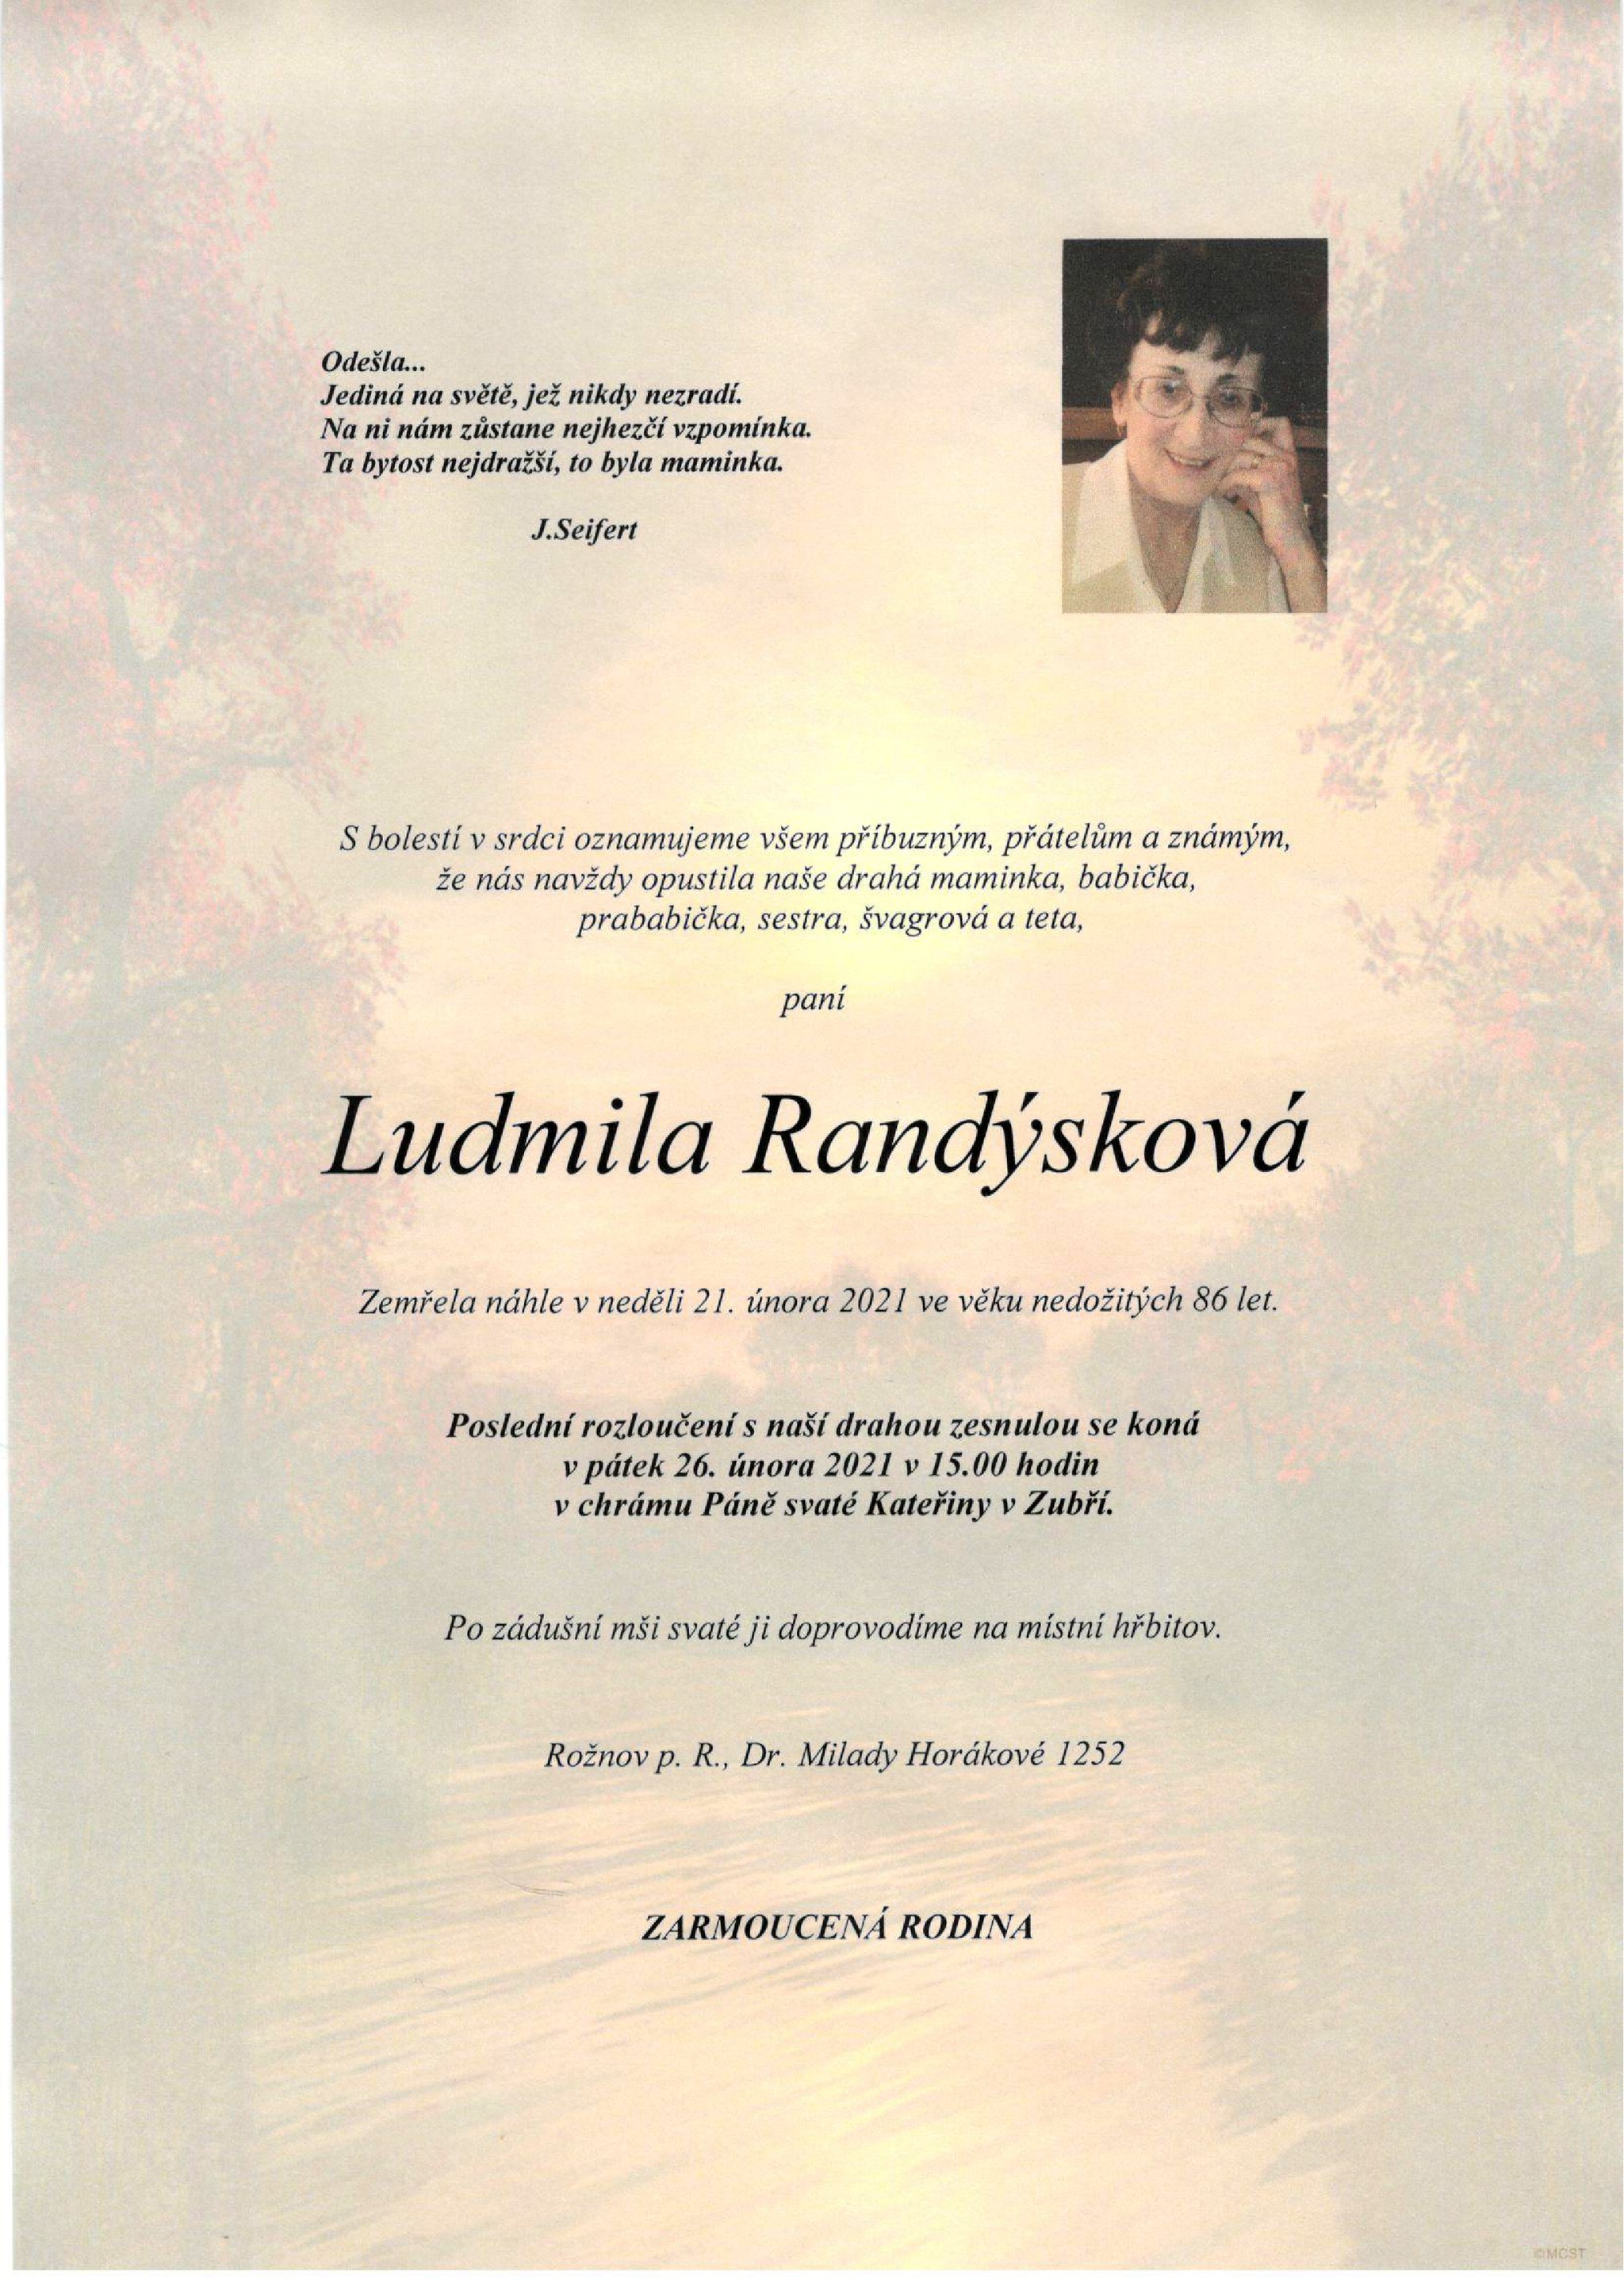 Ludmila Randýsková